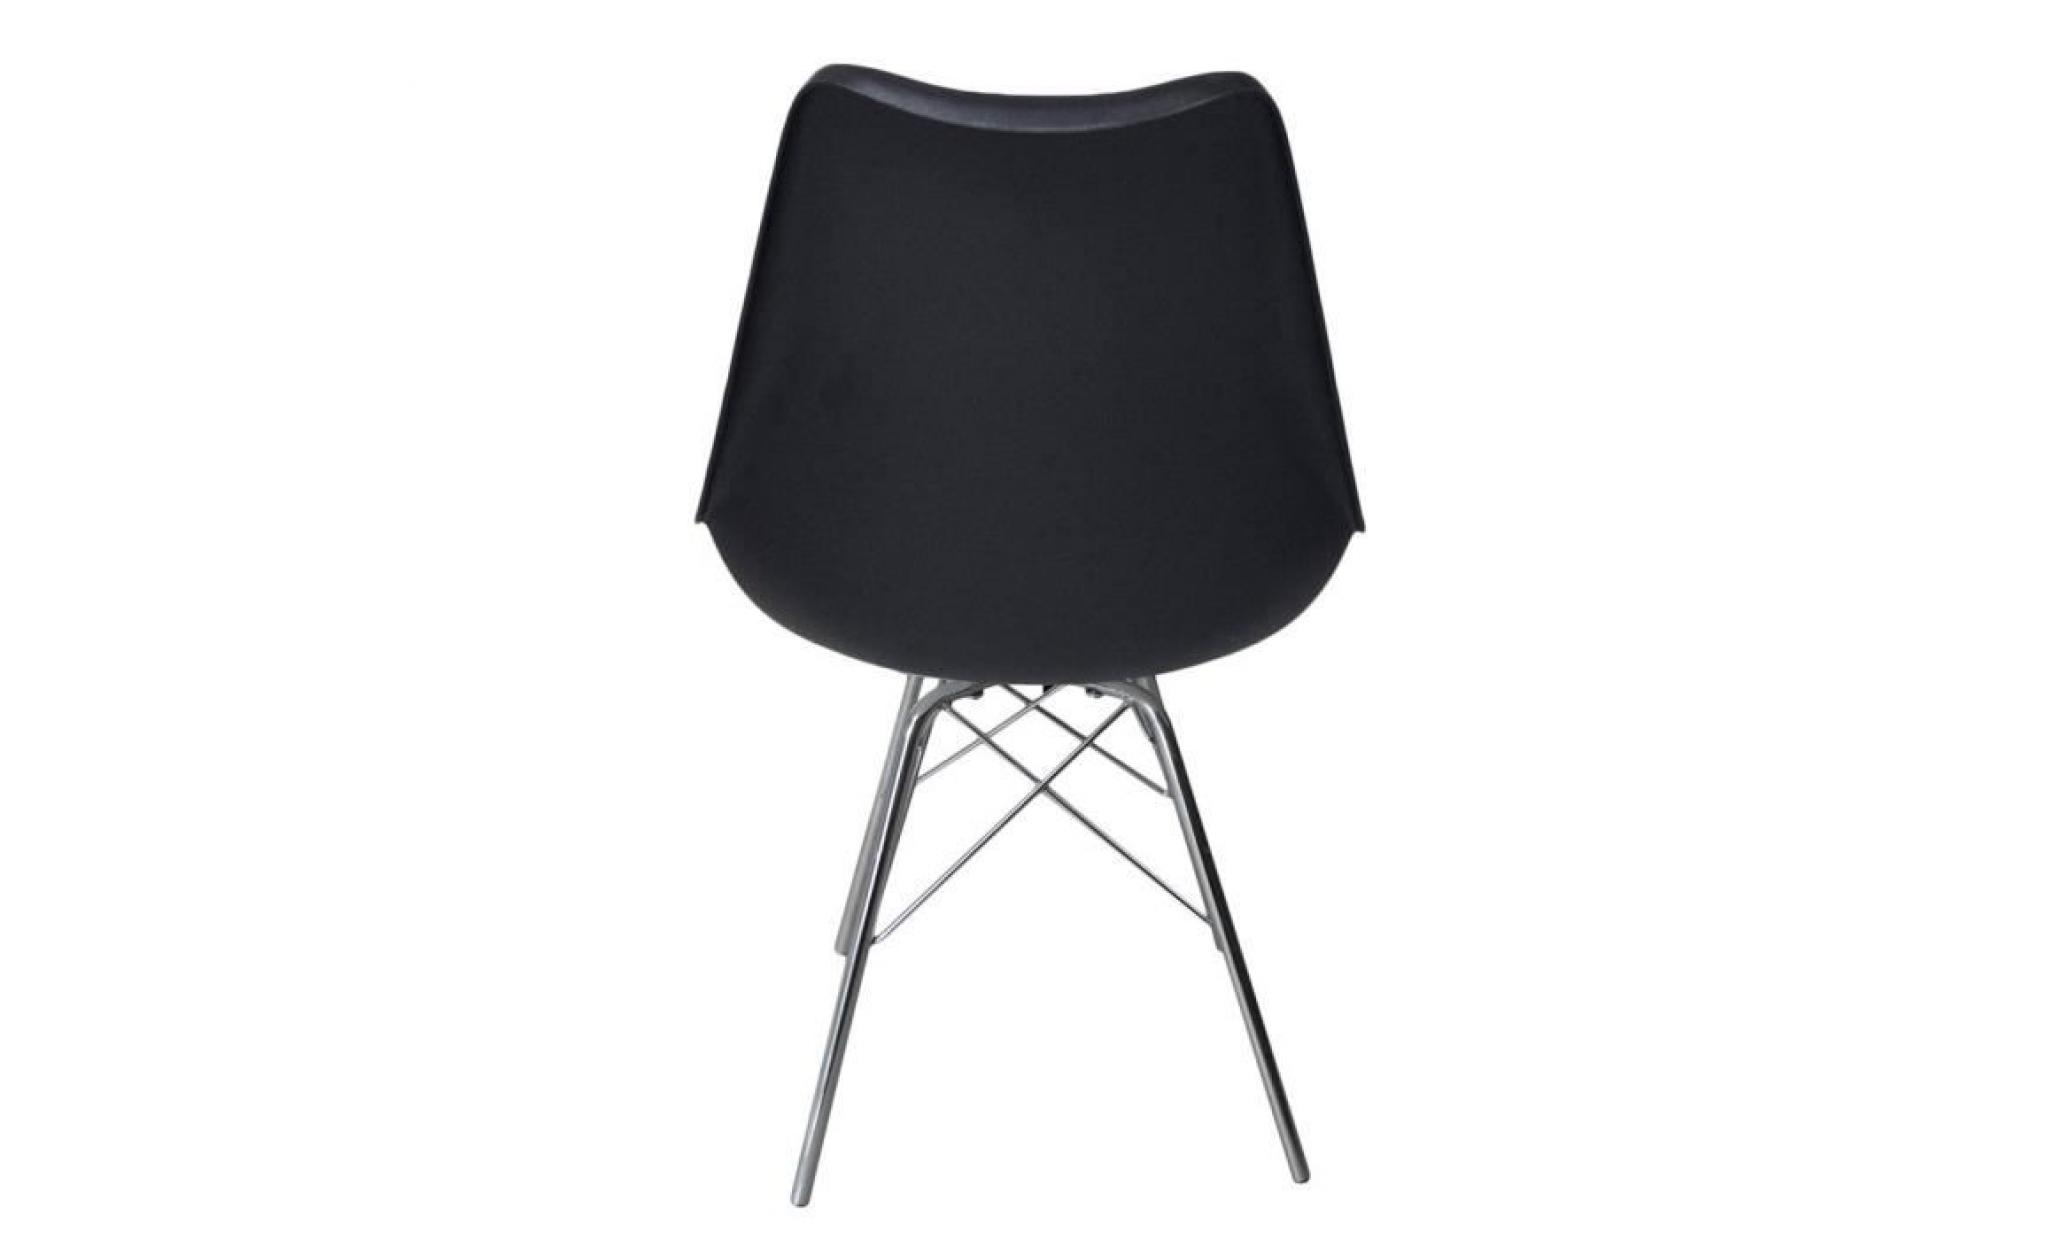 lot de 4 chaises de salle à manger style scandinave noir 48.5 * 54.5 * 81cm pas cher